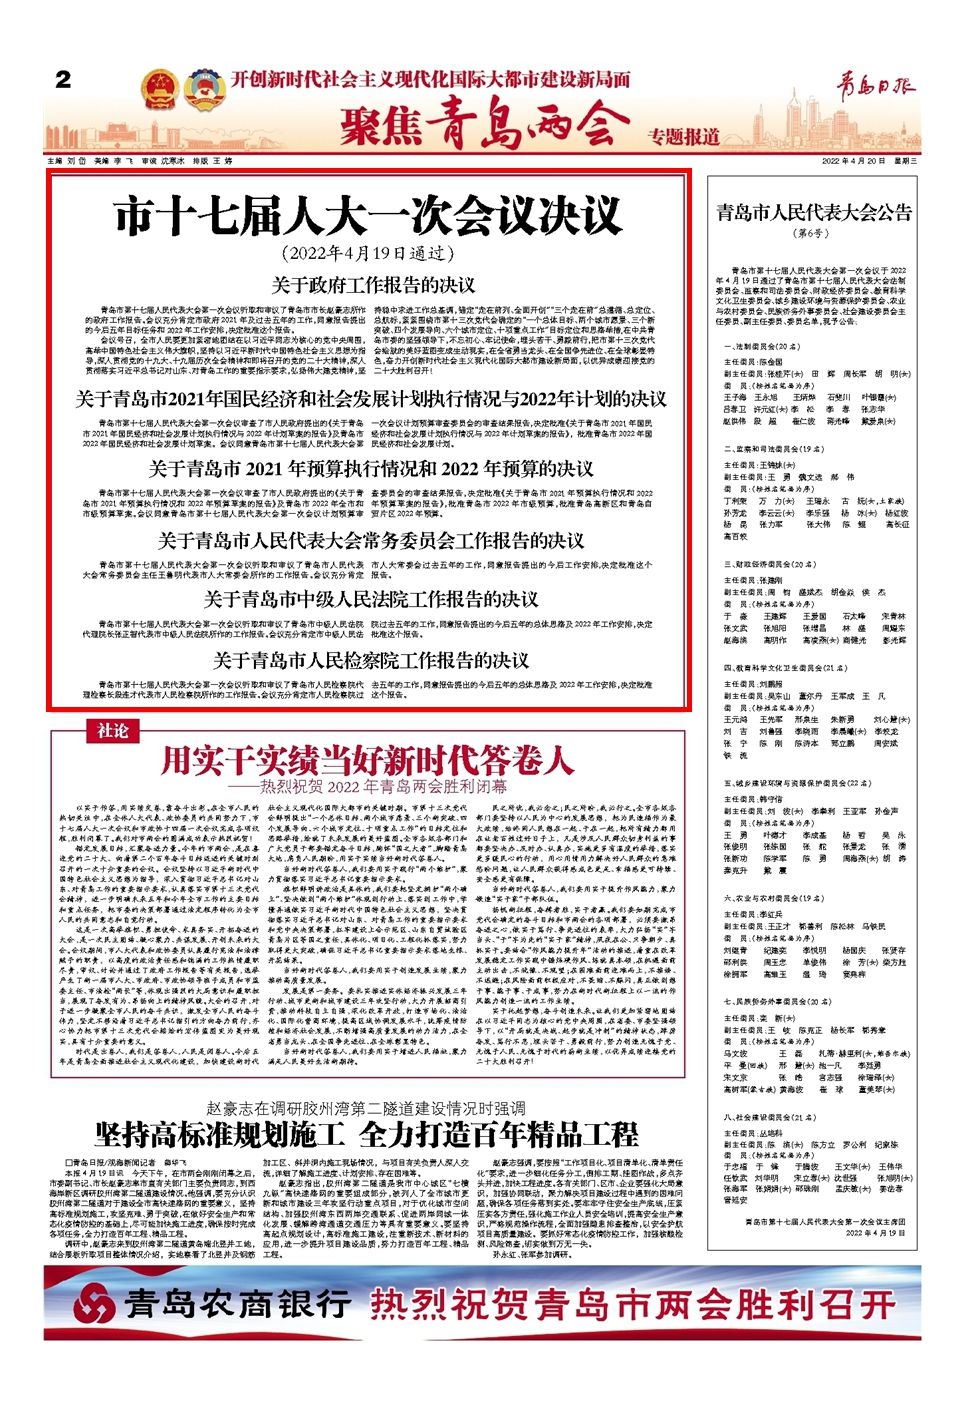 在深圳宝安区寻找辩护律师的全面指南  第1张